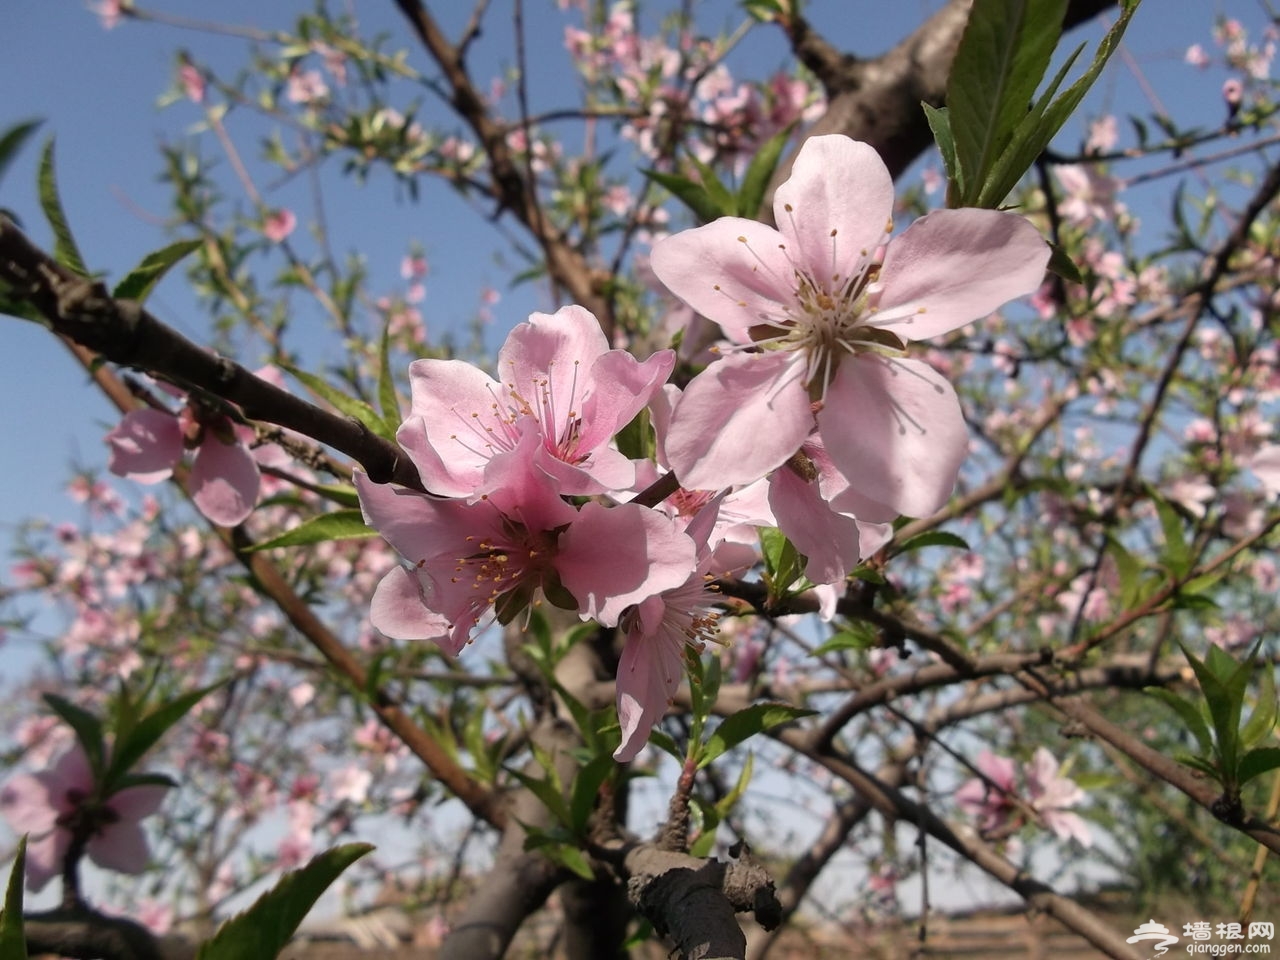 【高清图】又是一年赏花季——摄于天津桃花堤-中关村在线摄影论坛